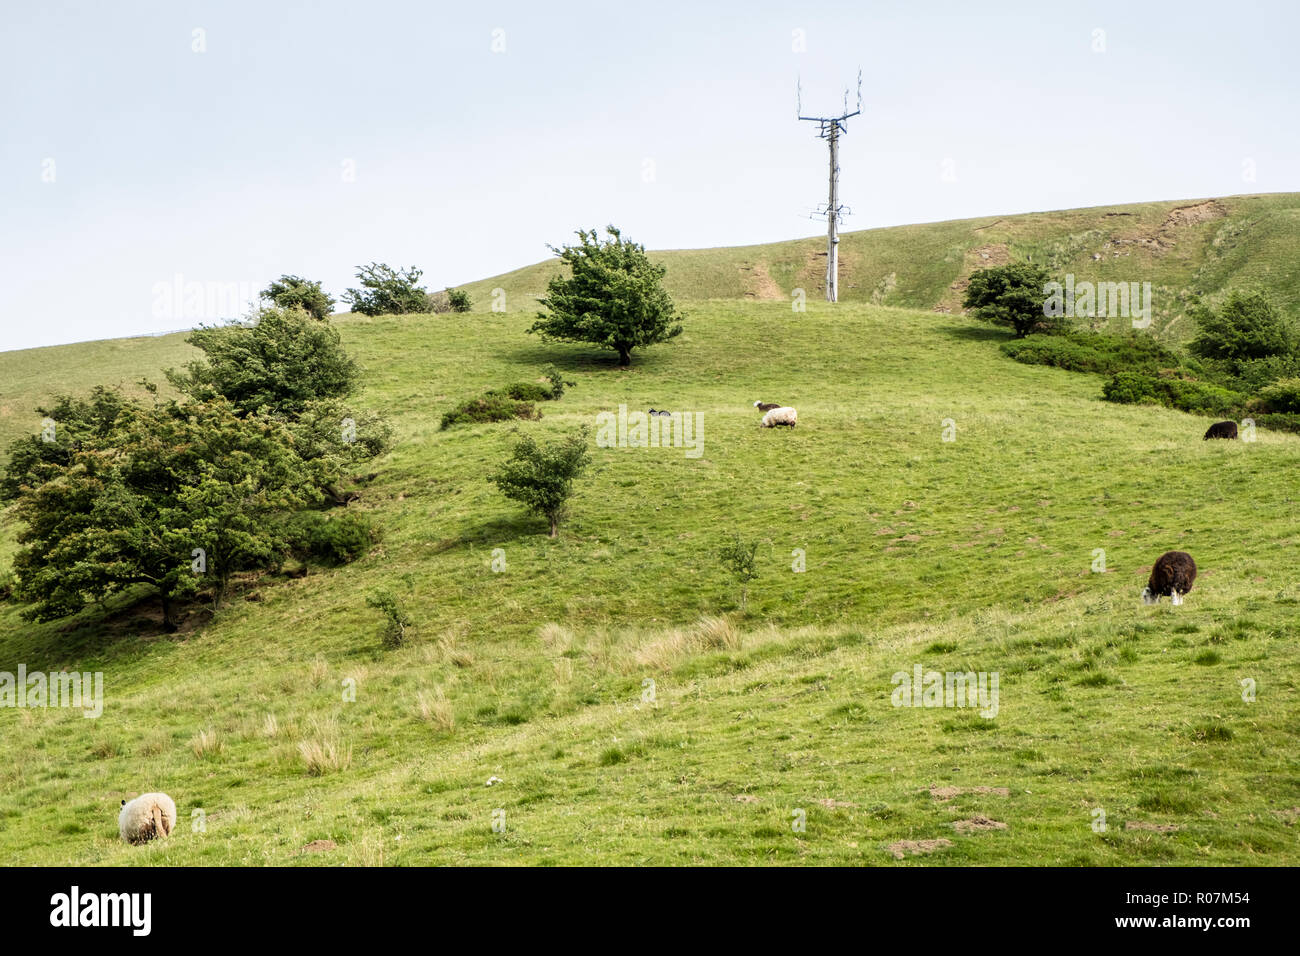 Selbsttragende Telekommunikation Mast in dem Land, in der nähe von Vale von Alfreton, Derbyshire, England, Großbritannien Stockfoto